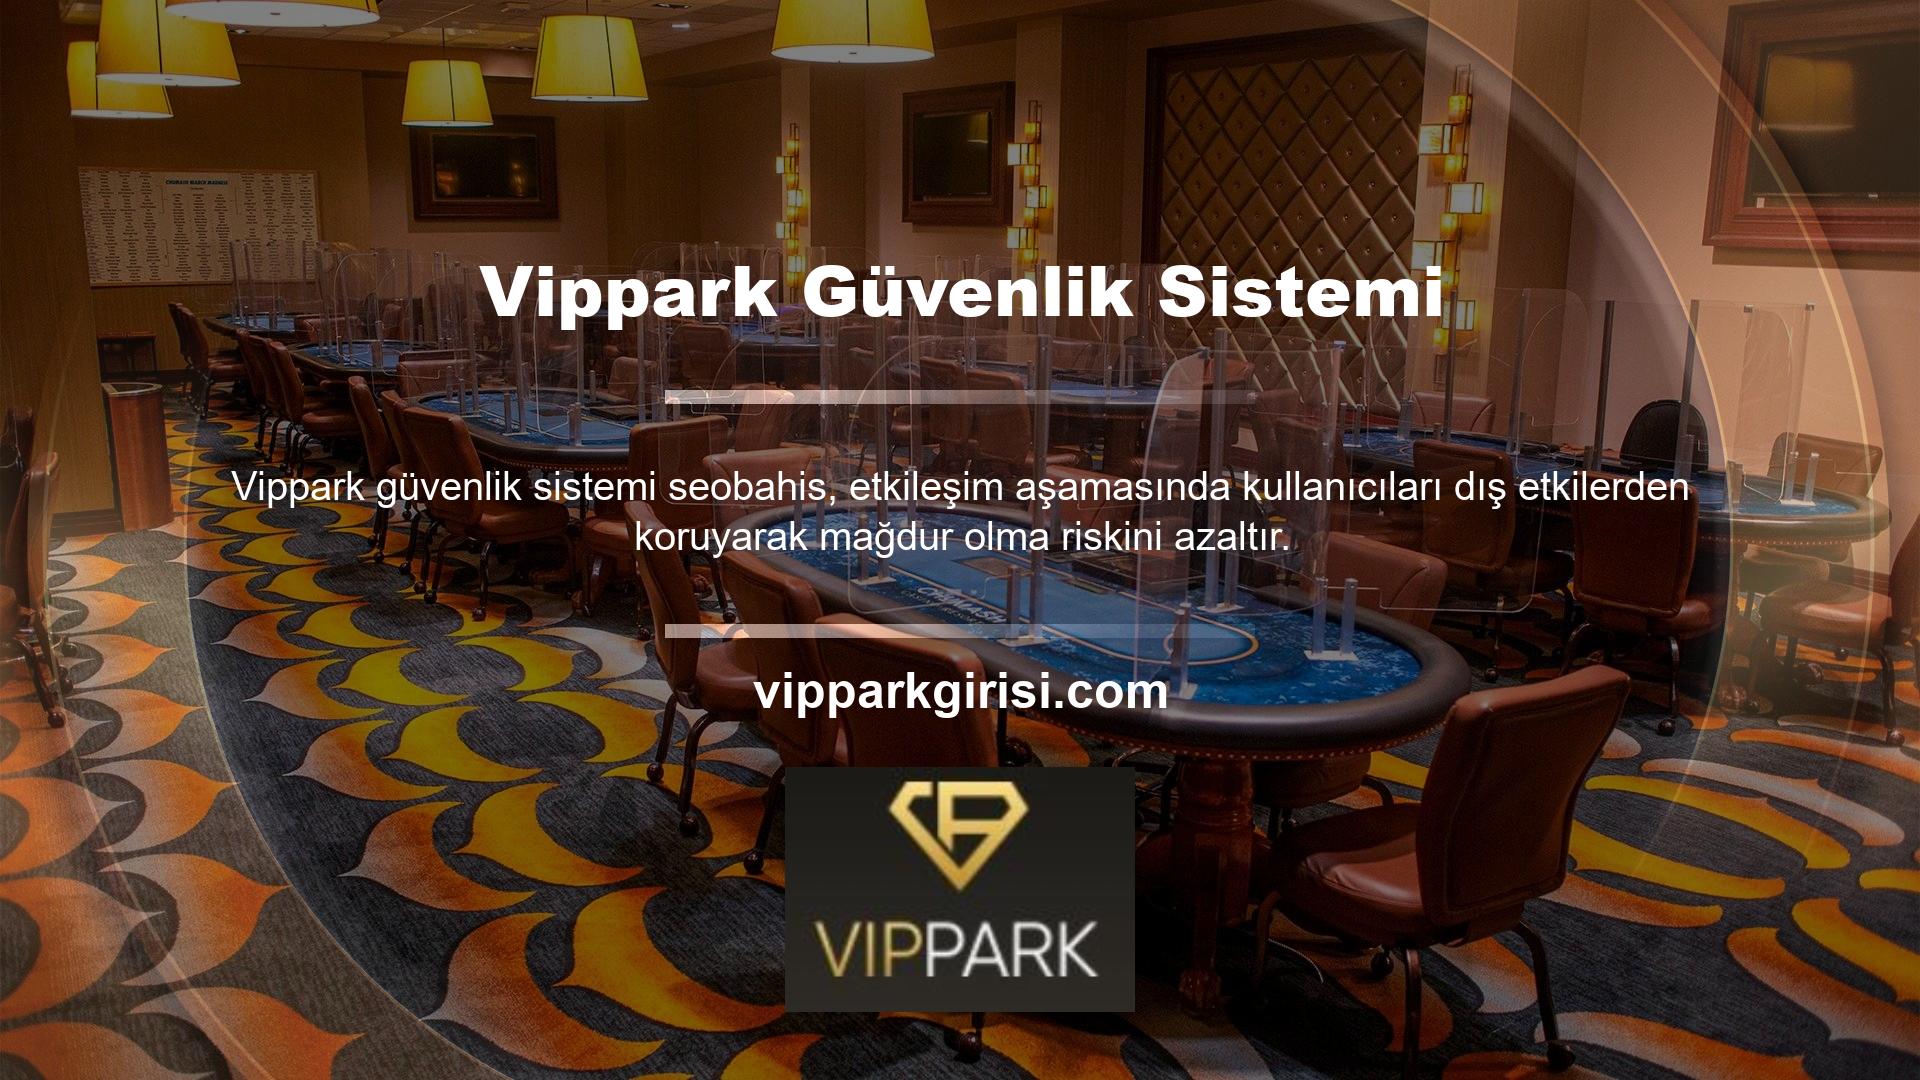 Lisanslama şirketi ile yapılan sözleşme kapsamında Vippark, kullanıcılara haklarını bildirecek, en hızlı çözümü sağlayacak ve ücretsiz bonus sağlayacaktır